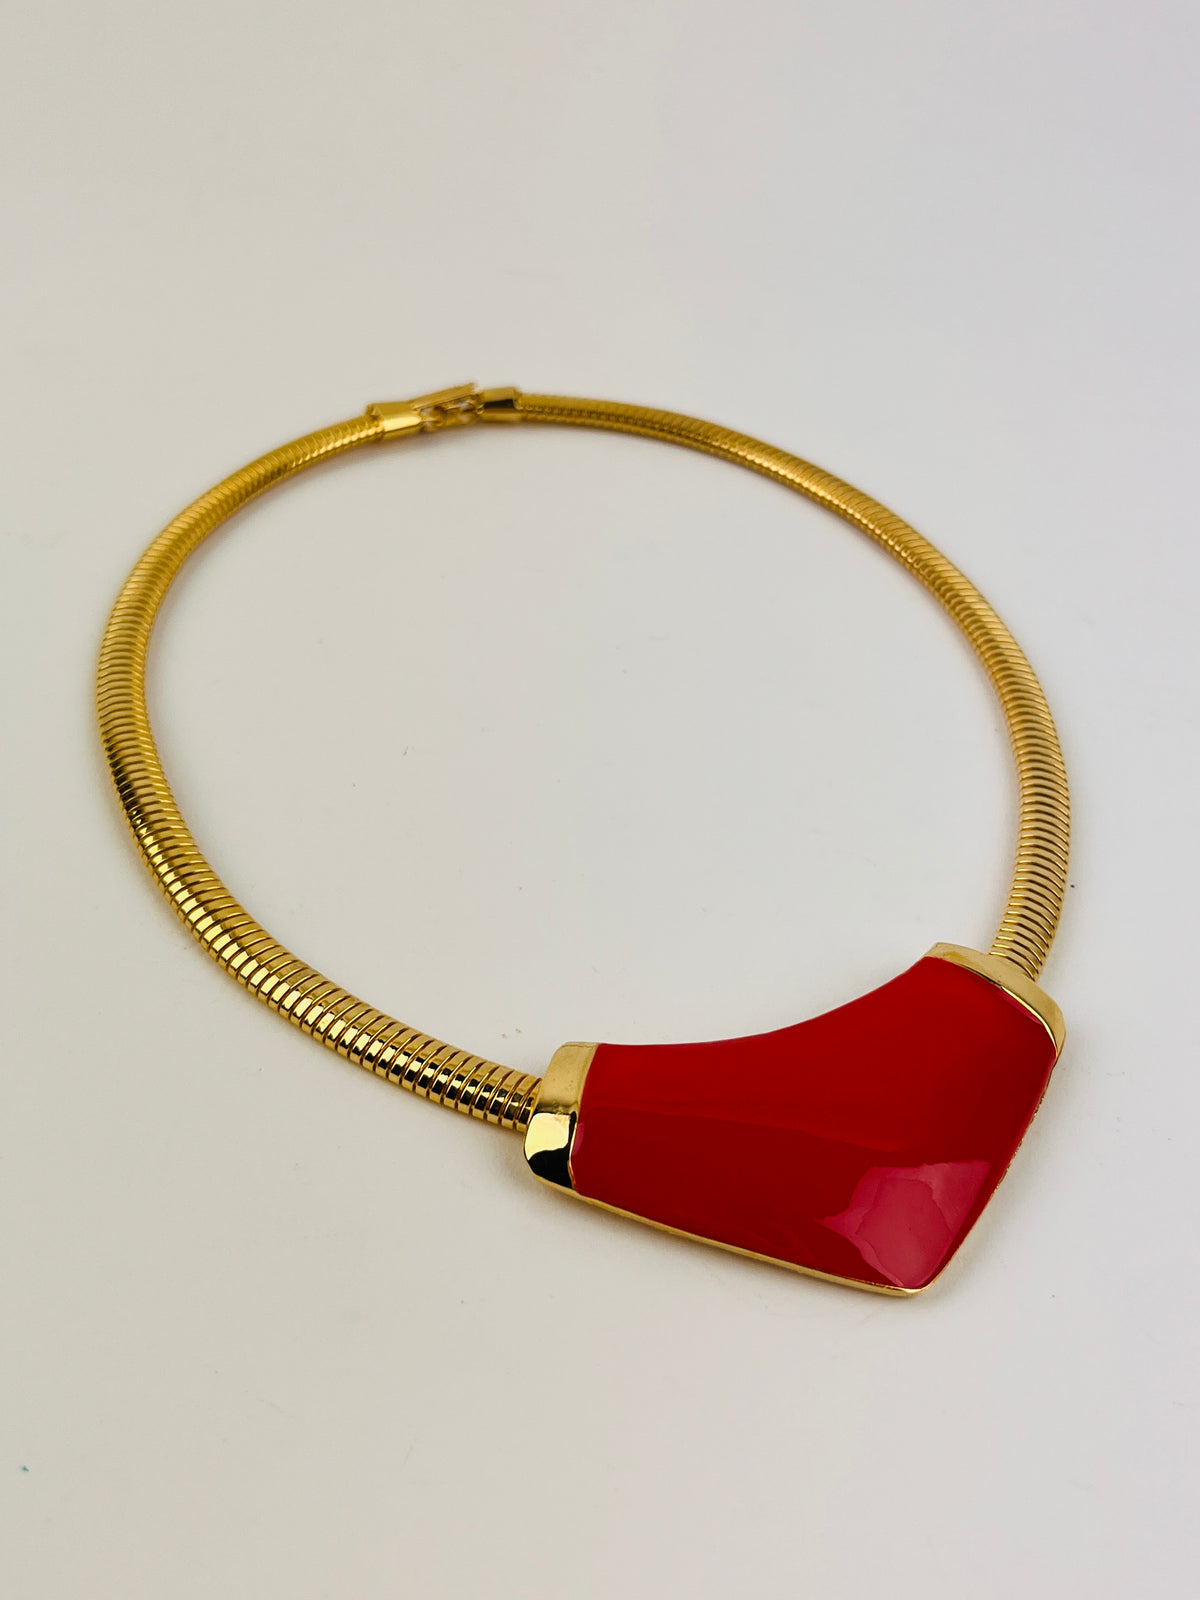 Vintage Red Enamel Necklace